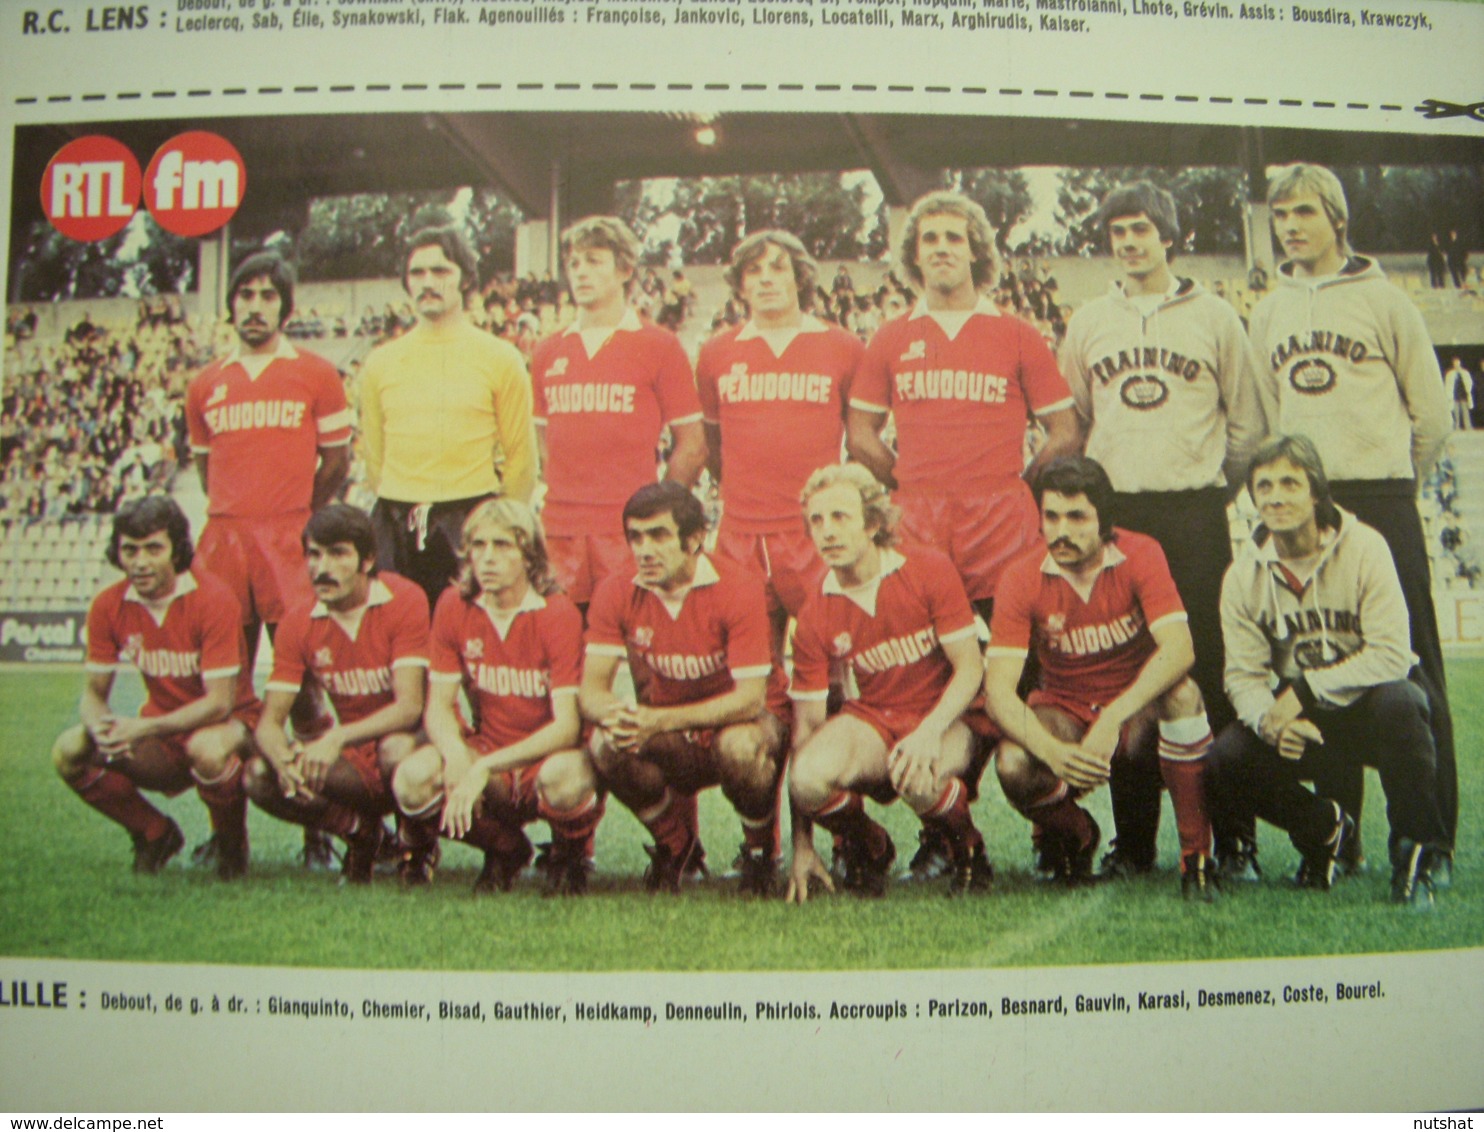 FOOTBALL COUPURE PRESSE PHOTO COULEUR 21x13cm LILLE 1976 1977 - Sport